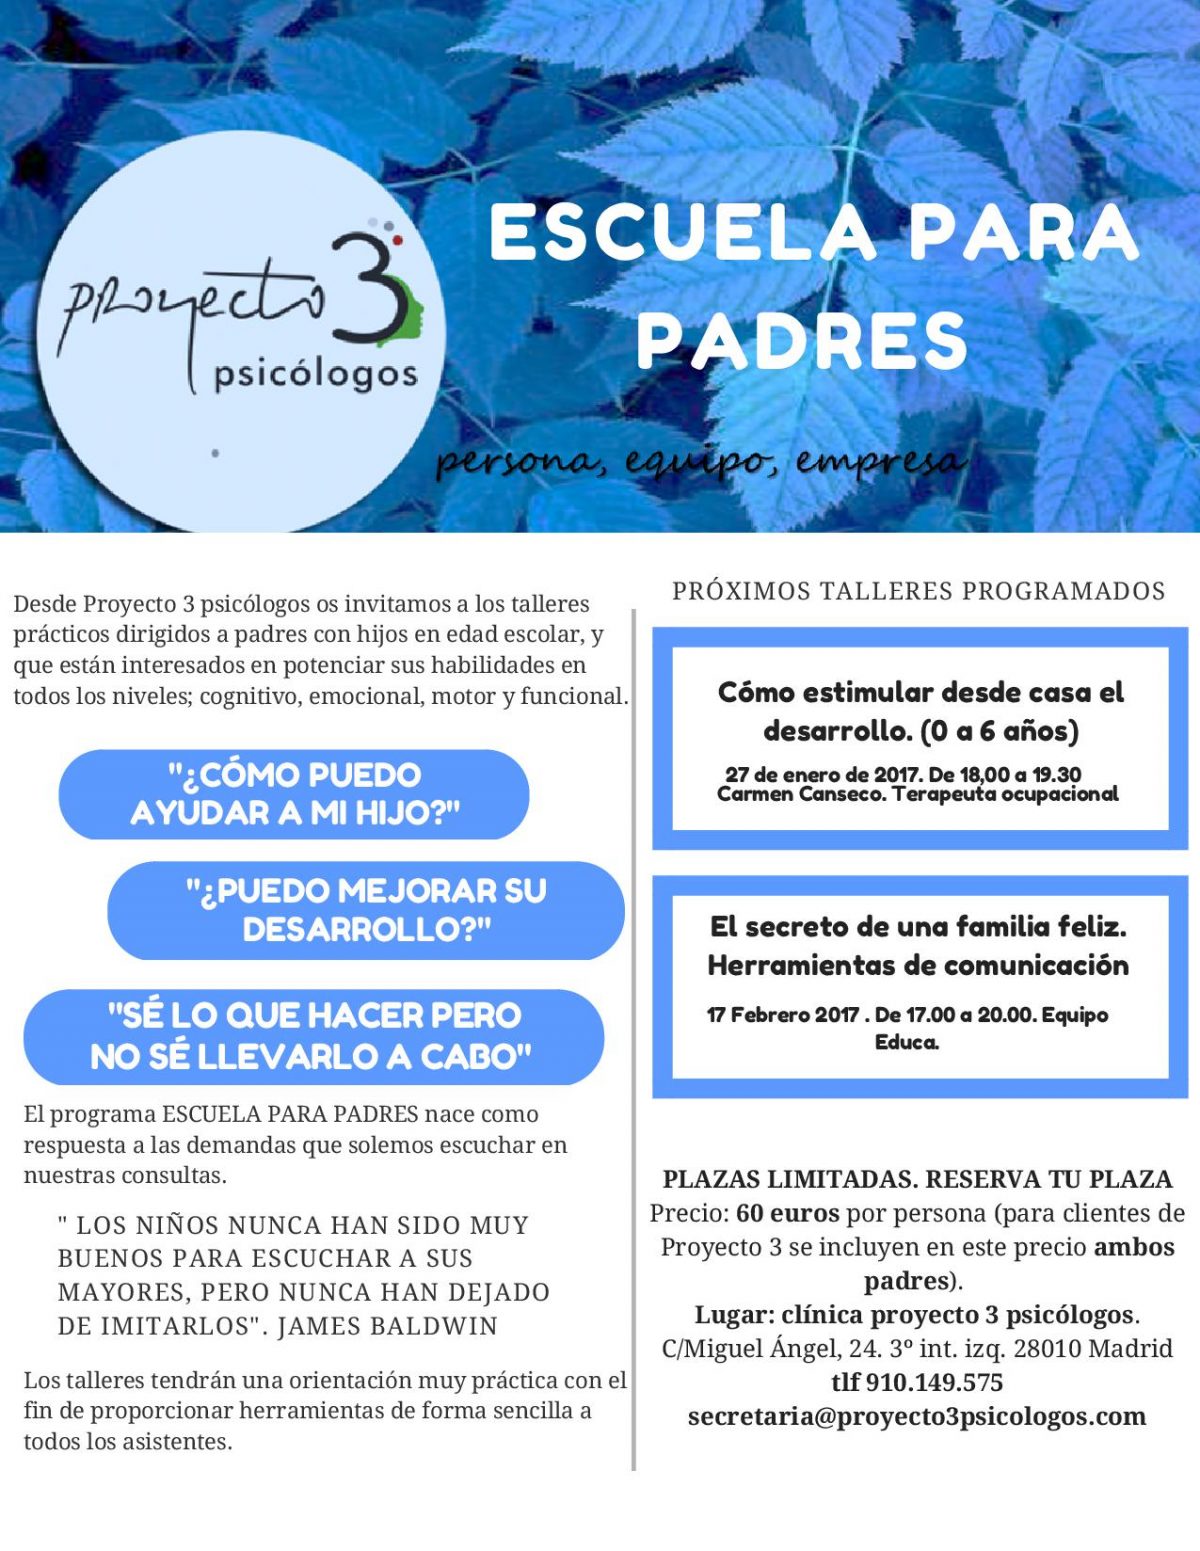 C_Users_almudenas_Desktop_Folleto-Escuela-de-Padres-2-1200x1551.jpg